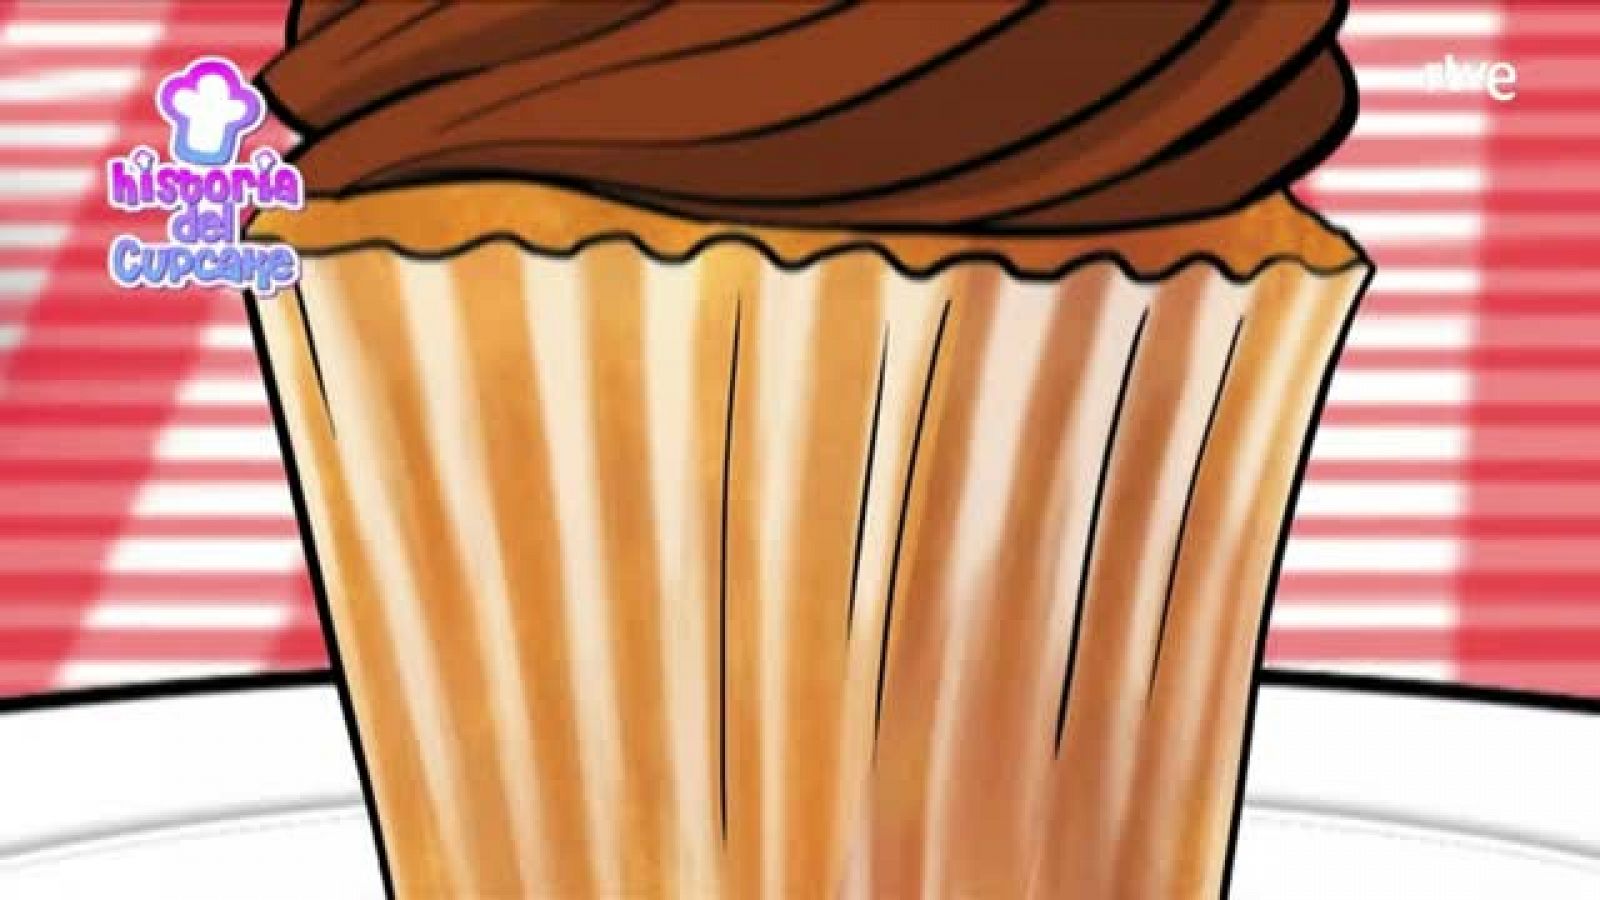 Animación - Historia del cupcake